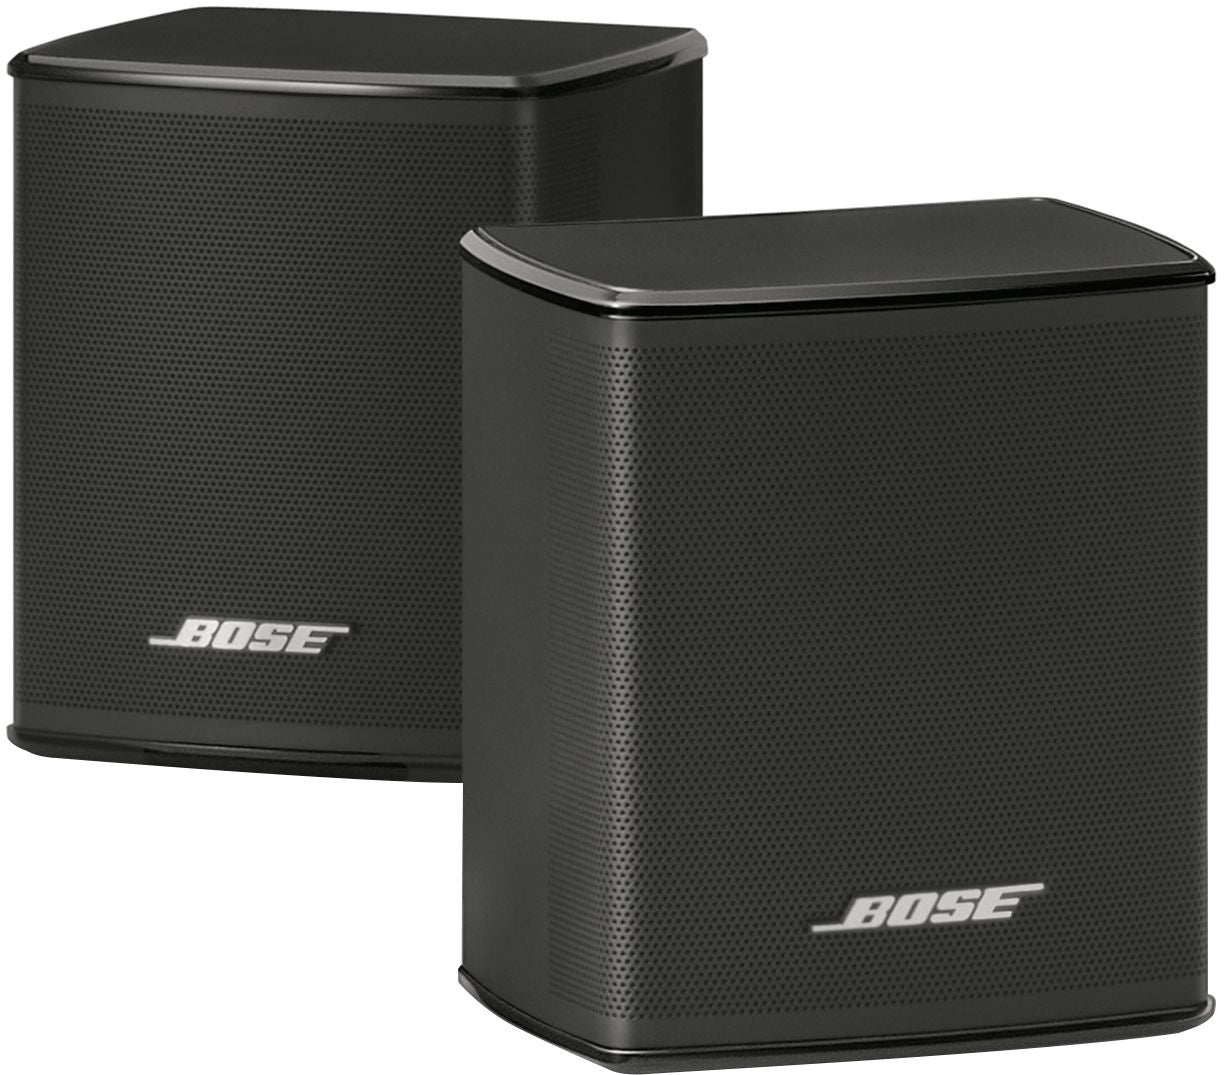 Bose - Surround Speakers 120-Watt Wireless Home Theater Speakers (Pair) - Black